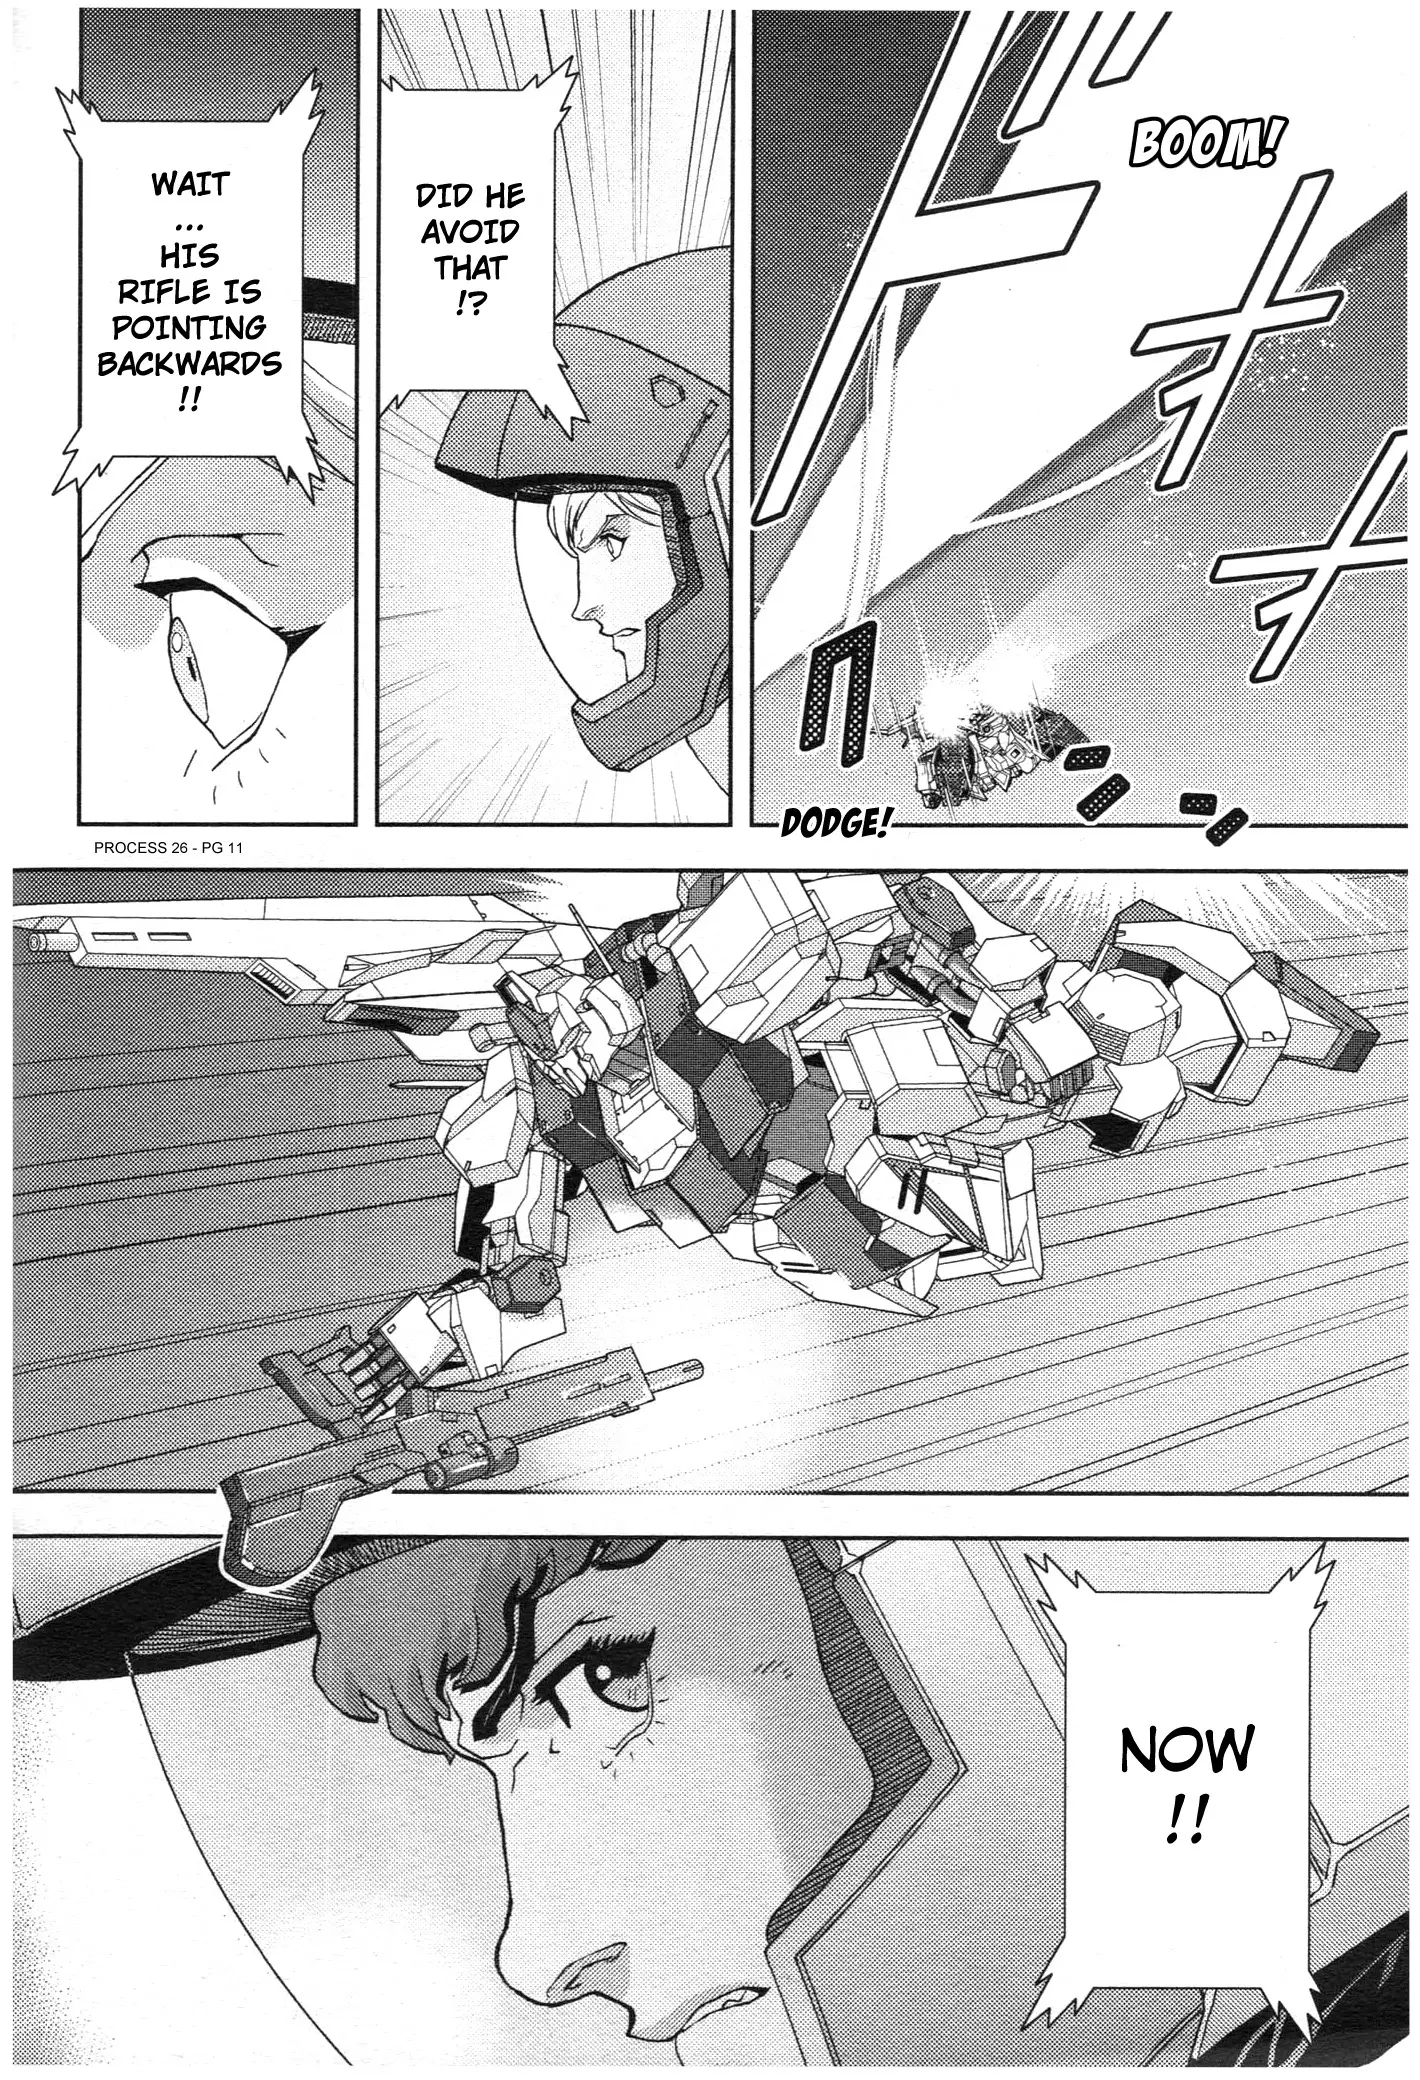 Mobile Suit Zeta Gundam - Define - 75 page 11-28763fd0